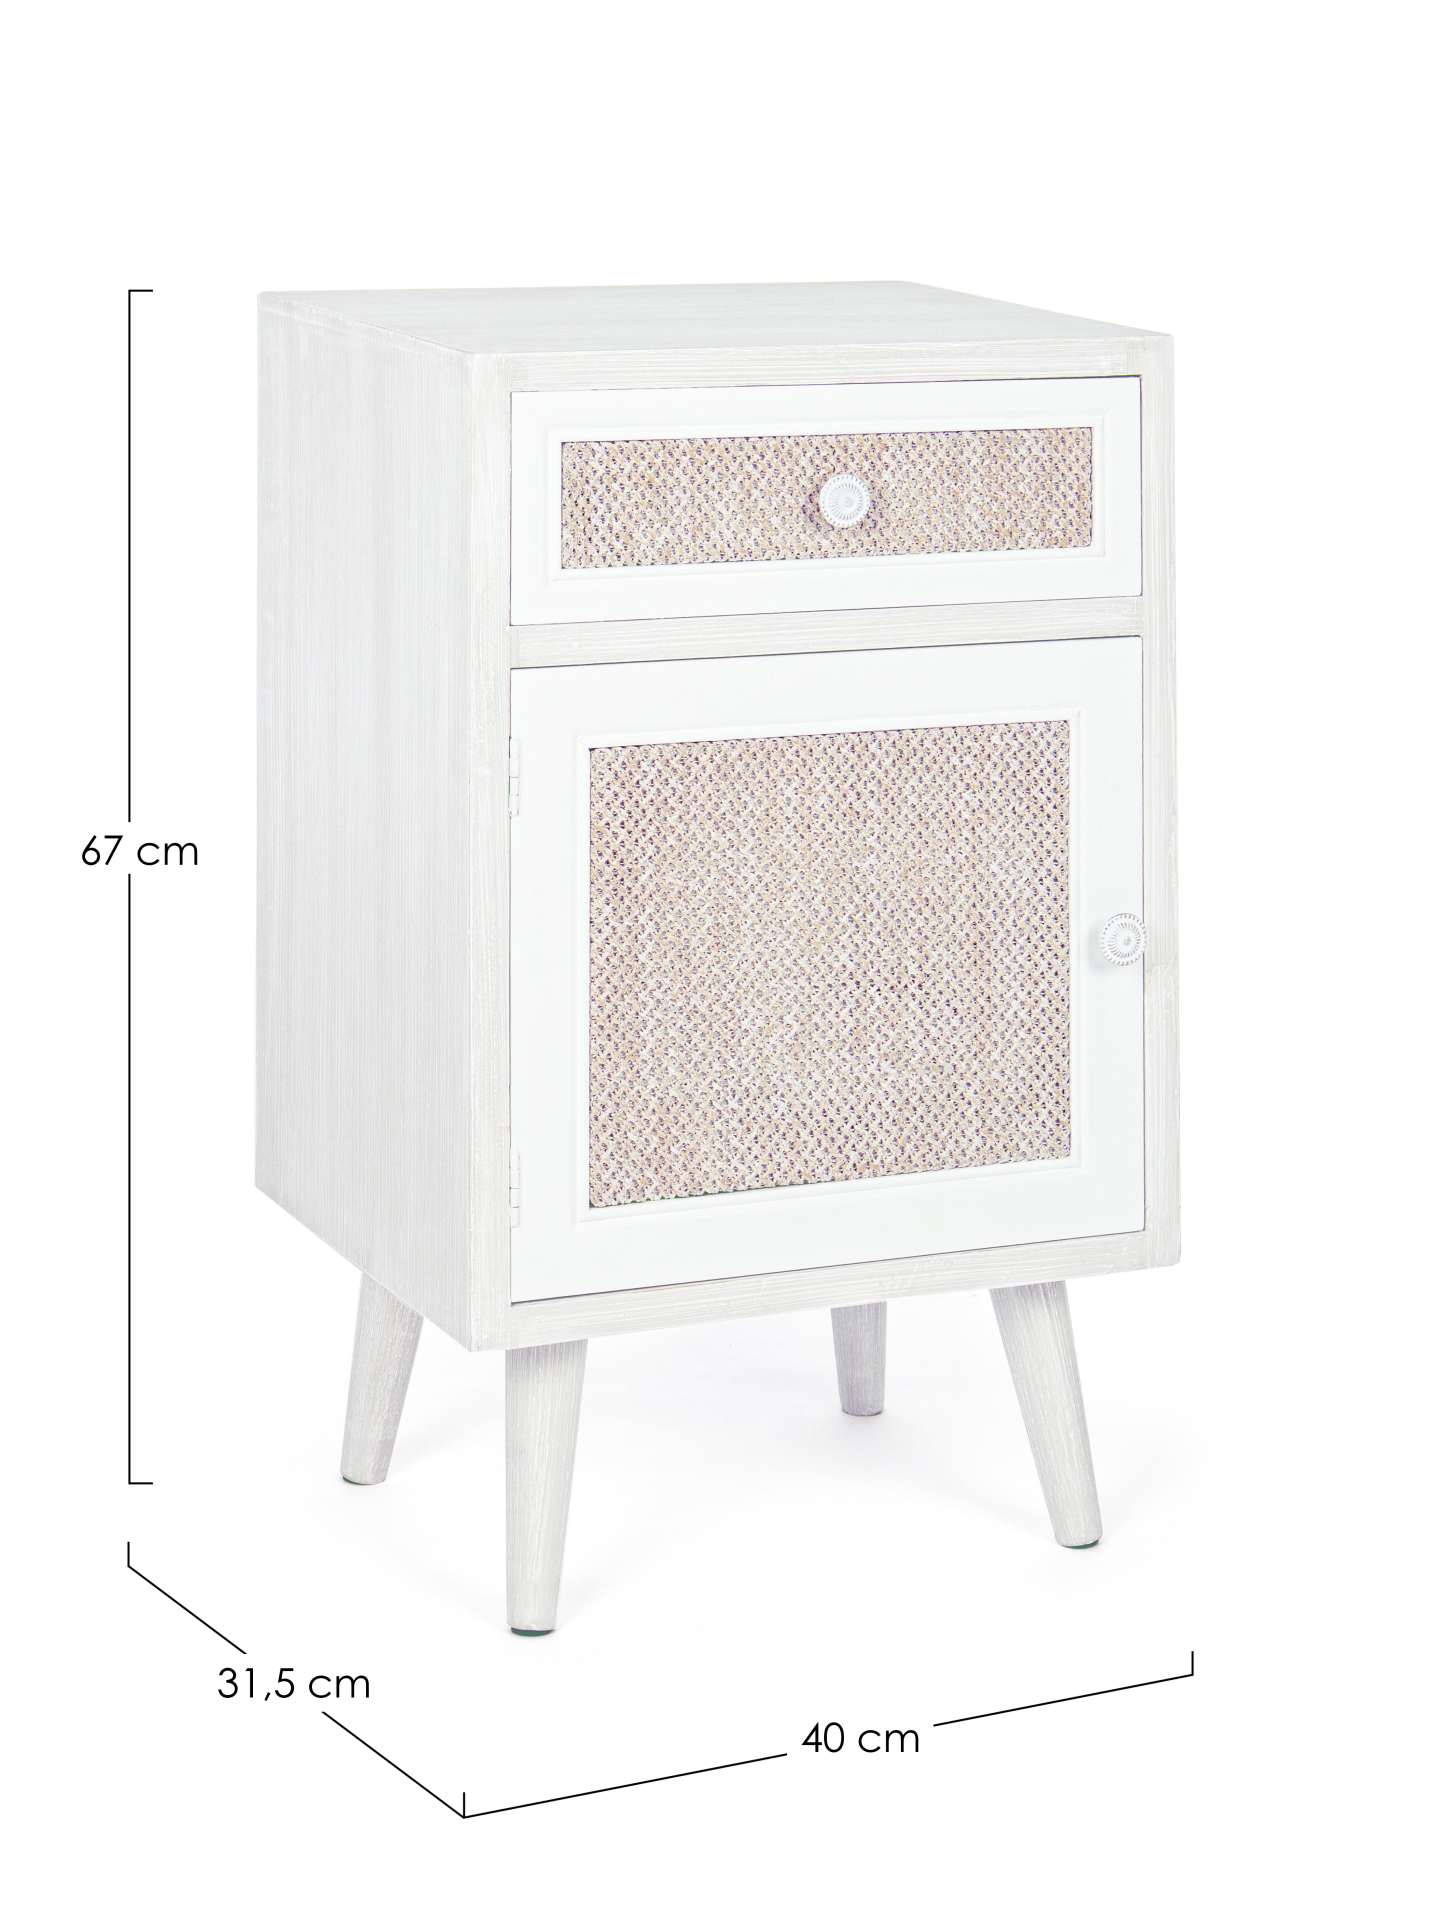 Der Nachttisch Montiel überzeugt mit seinem klassischen Design. Gefertigt wurde er aus MDF, welches einen weißen Farbton besitzt. Die Tür und Schublade ist aus Leinen gefertigt.. Der Nachttisch verfügt über eine Schublade und eine Tür. Die Breite beträgt 